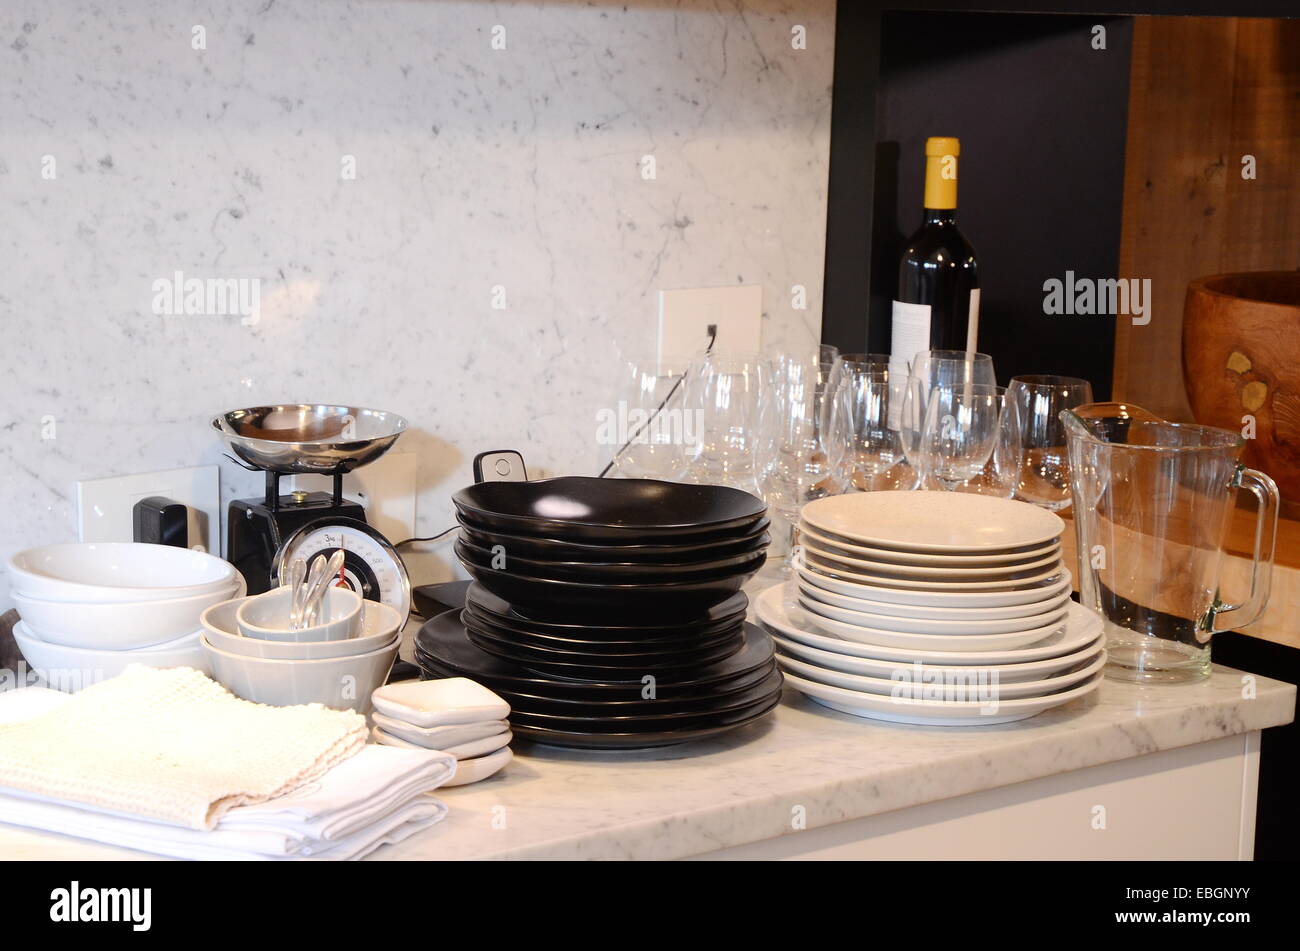 Nettoyer la vaisselle dans la cuisine prêt à mettre une table de dîner Banque D'Images